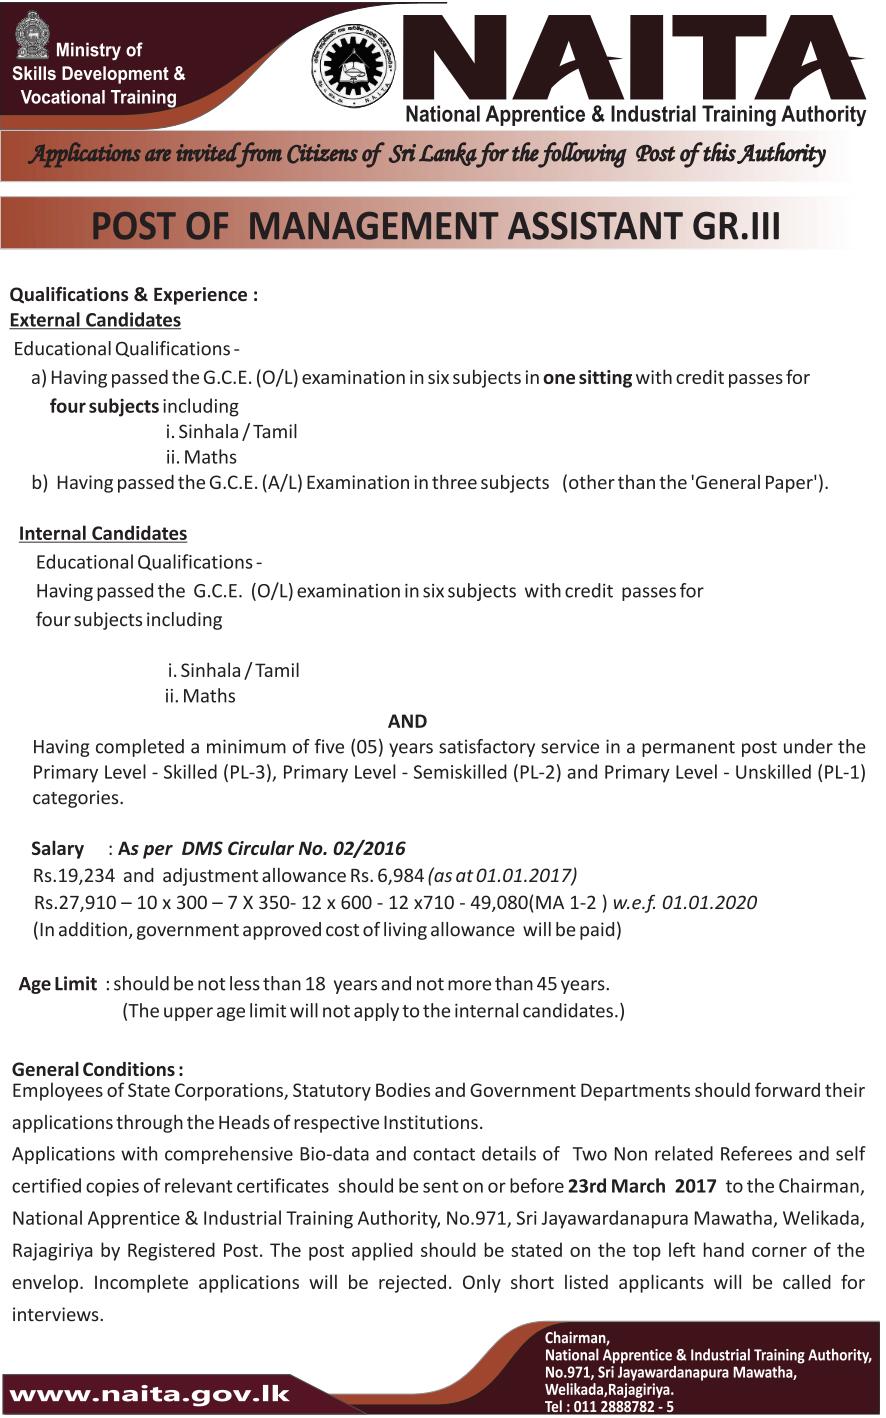 NAITA Management Assistant Jobs Vacancies